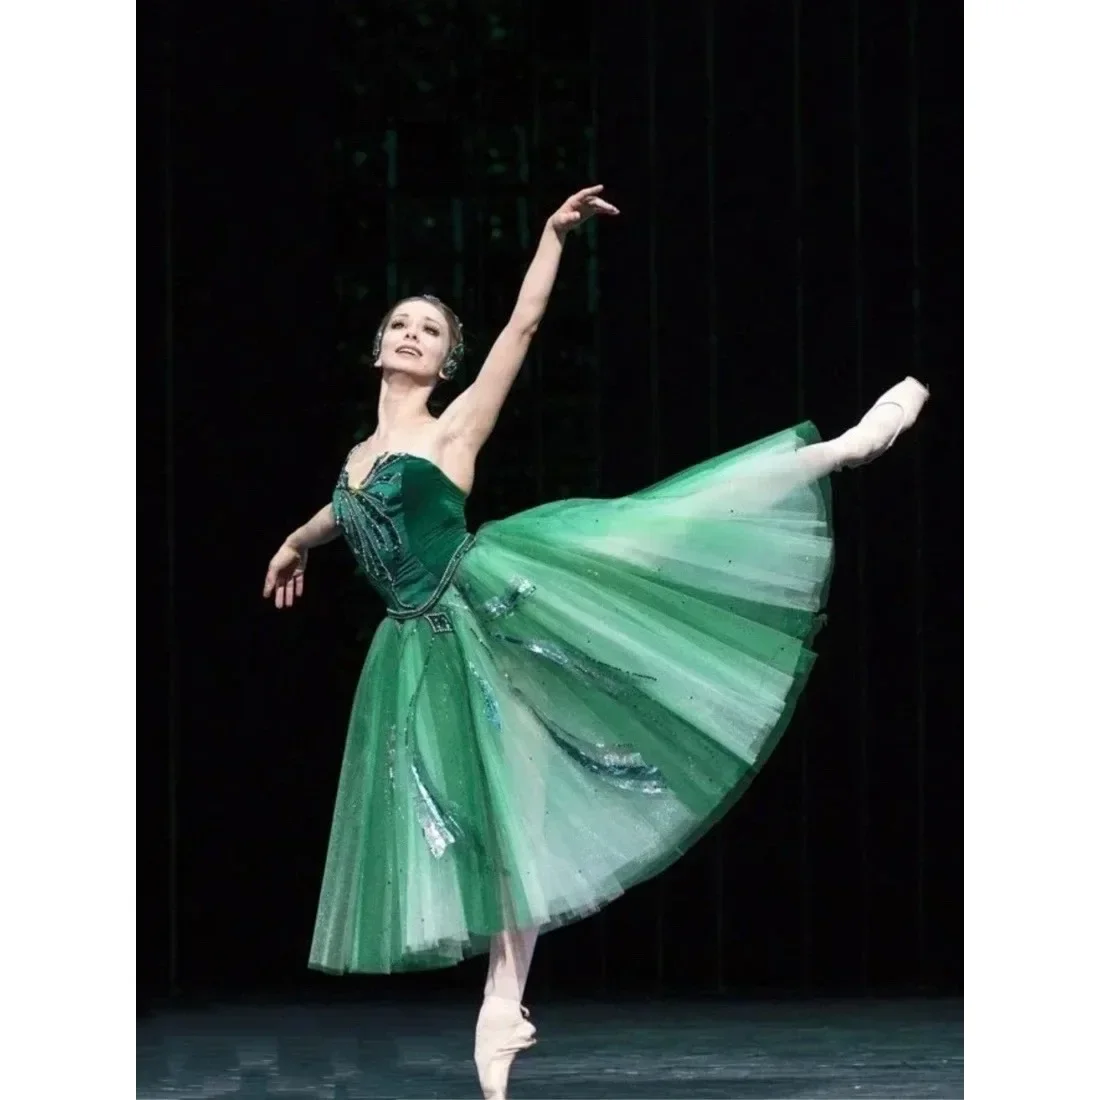 children-ballet-skirt-swan-lake-performance-dress-green-velet-long-ballet-dress-girls-ballet-leotards-for-women-ballerina-dress